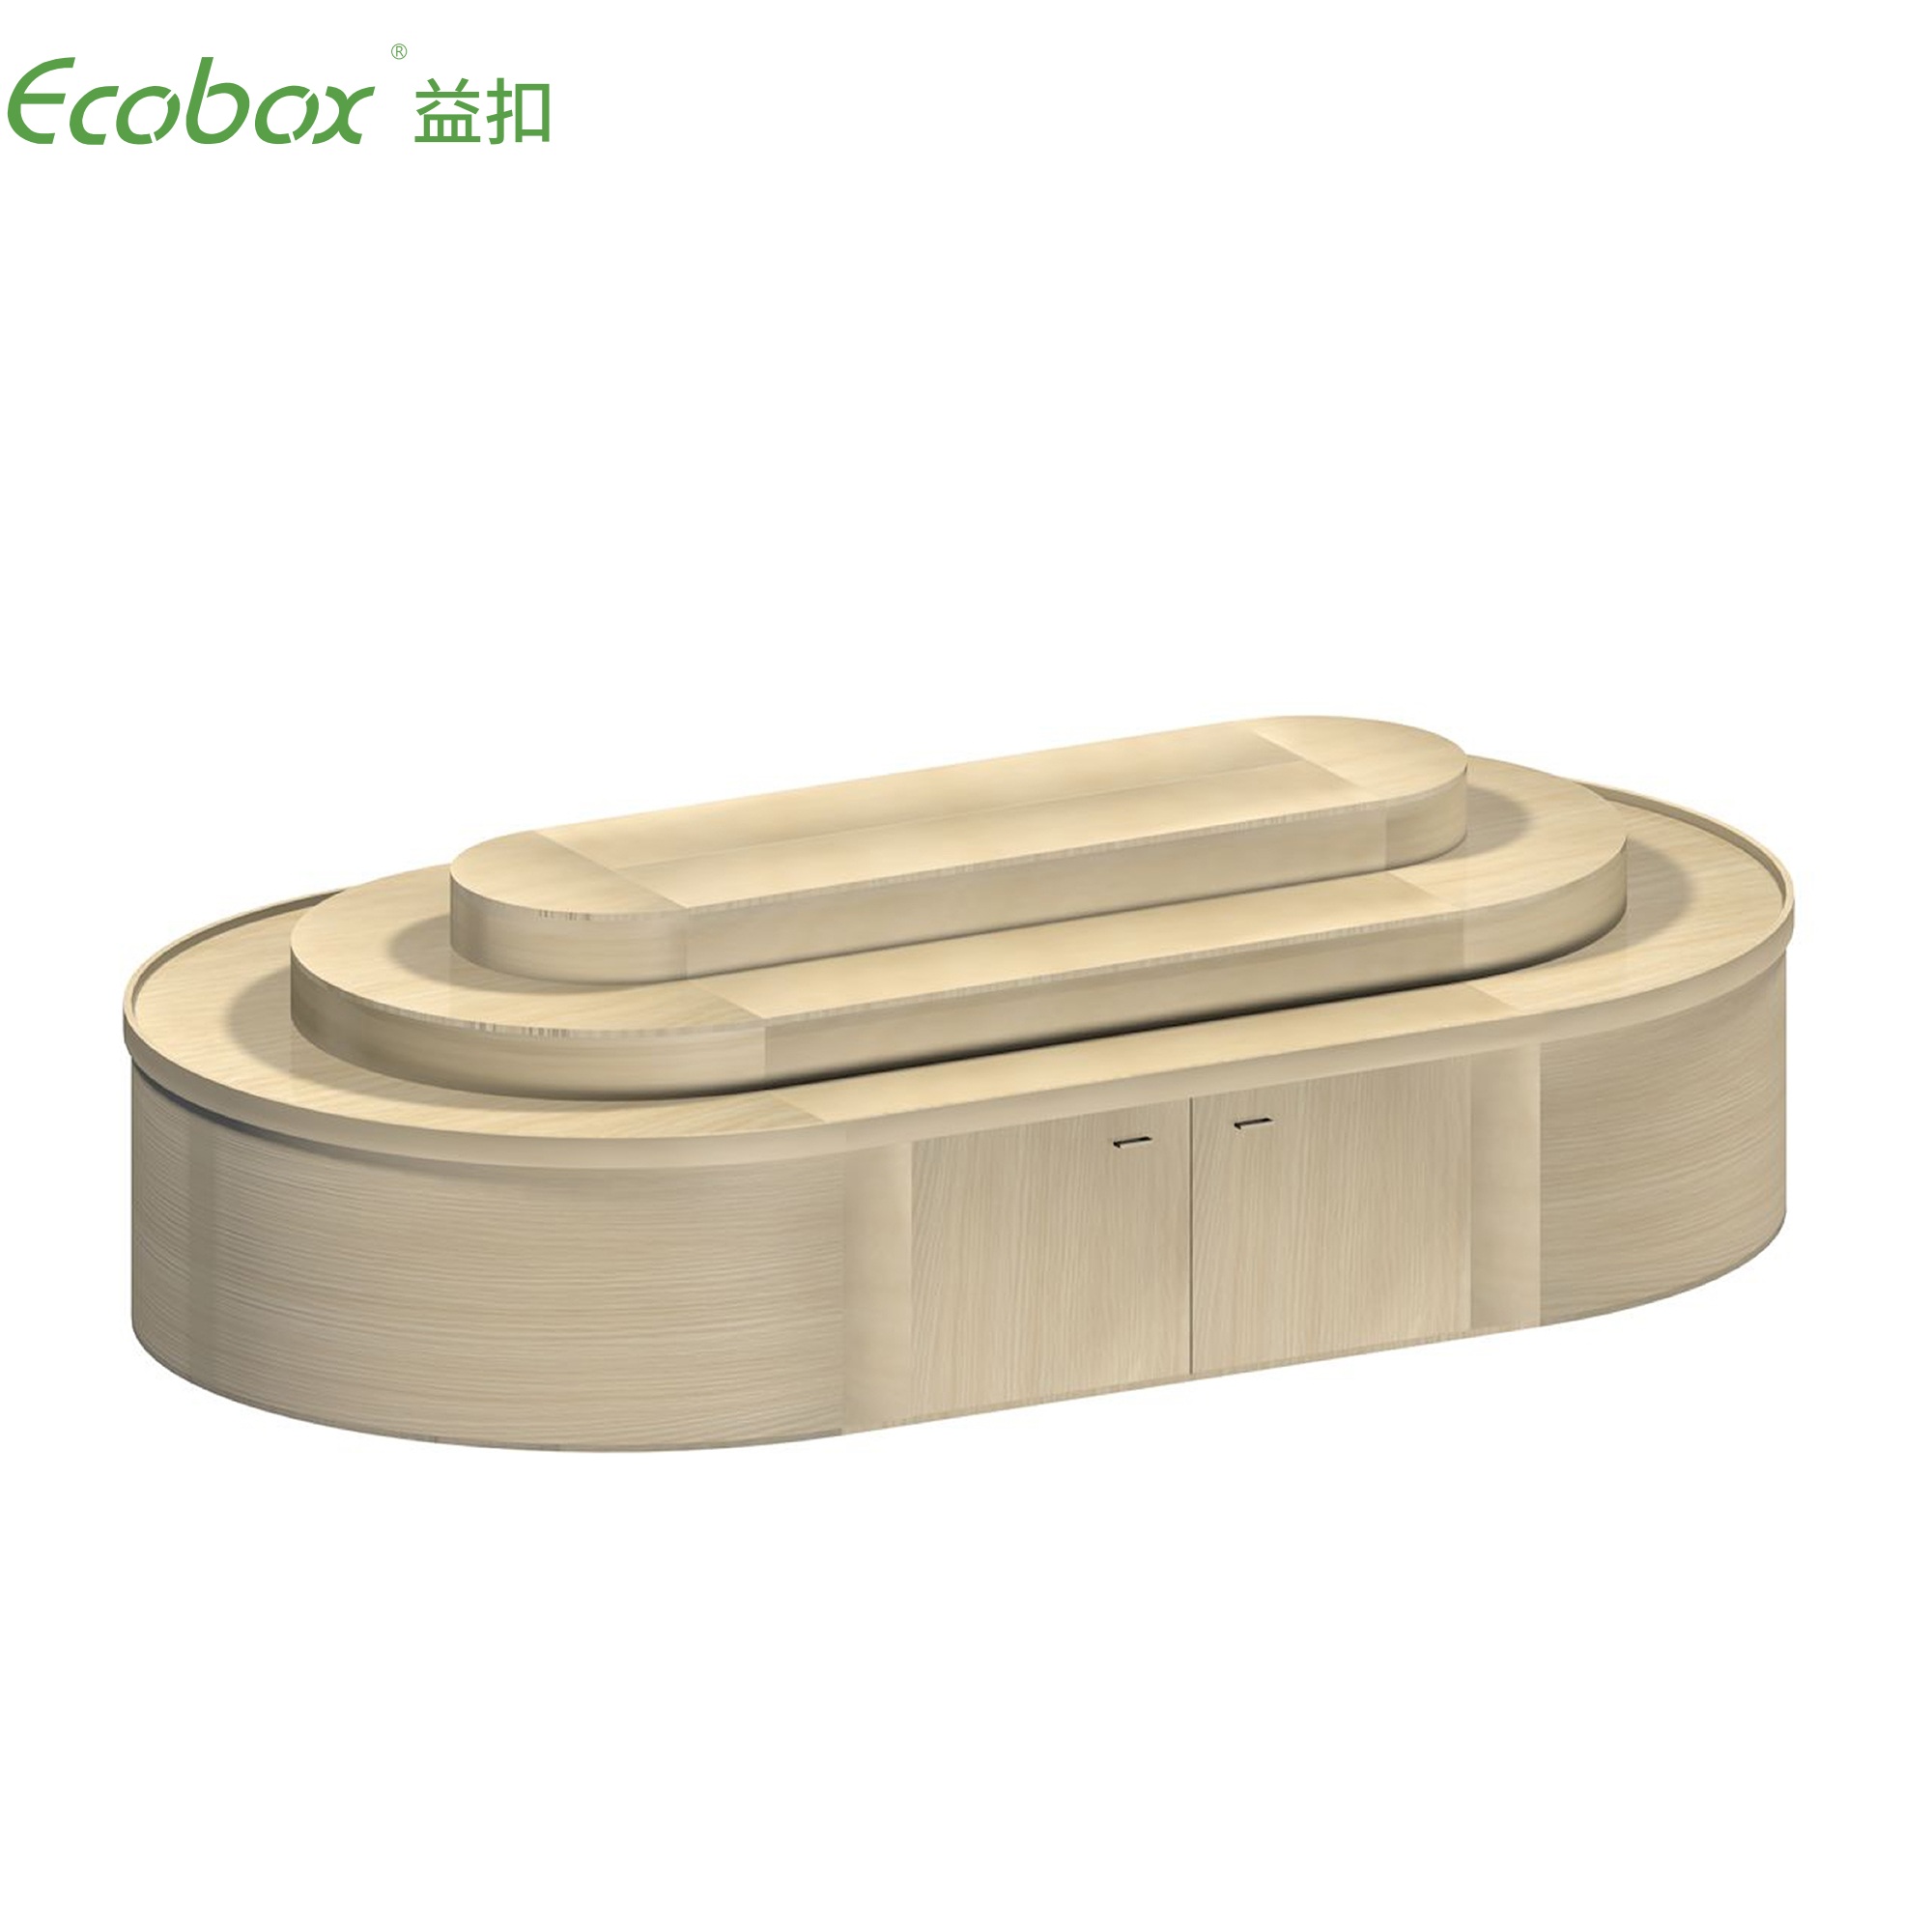 Ecobox G012 Supermarkt-Großwarendisplays, rundes Regal für Süßigkeiten, Nüsse und luftdichten Behälter